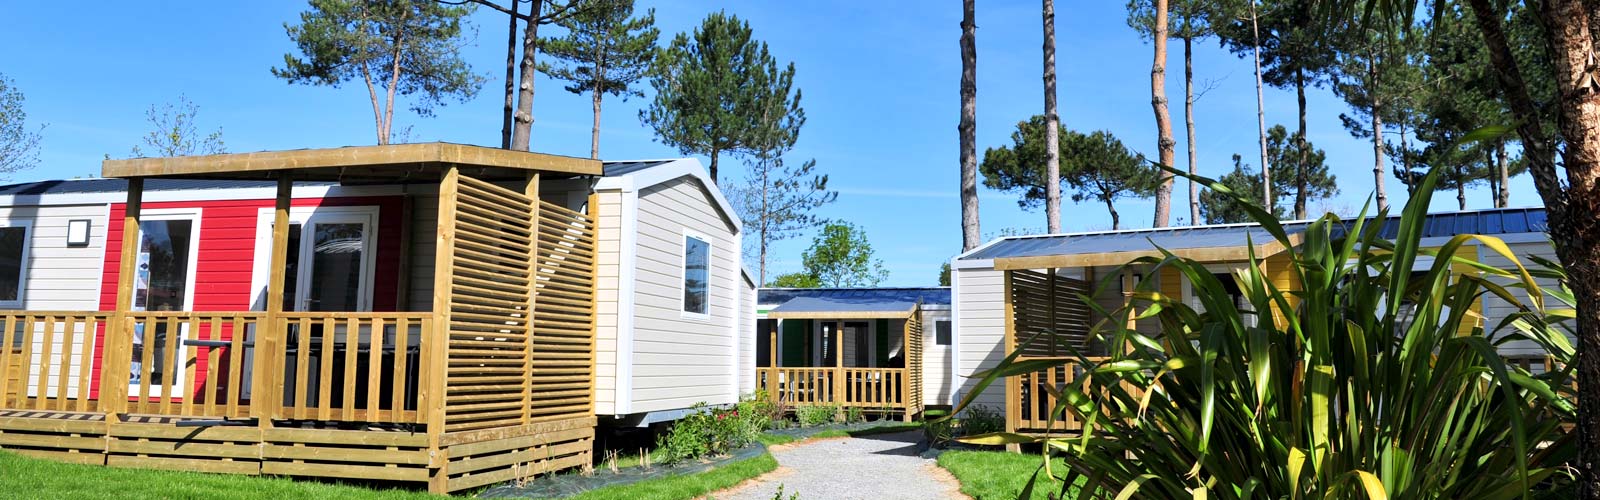 location de mobil-home gamme confort au camping Le Fief à Saint-Brevin